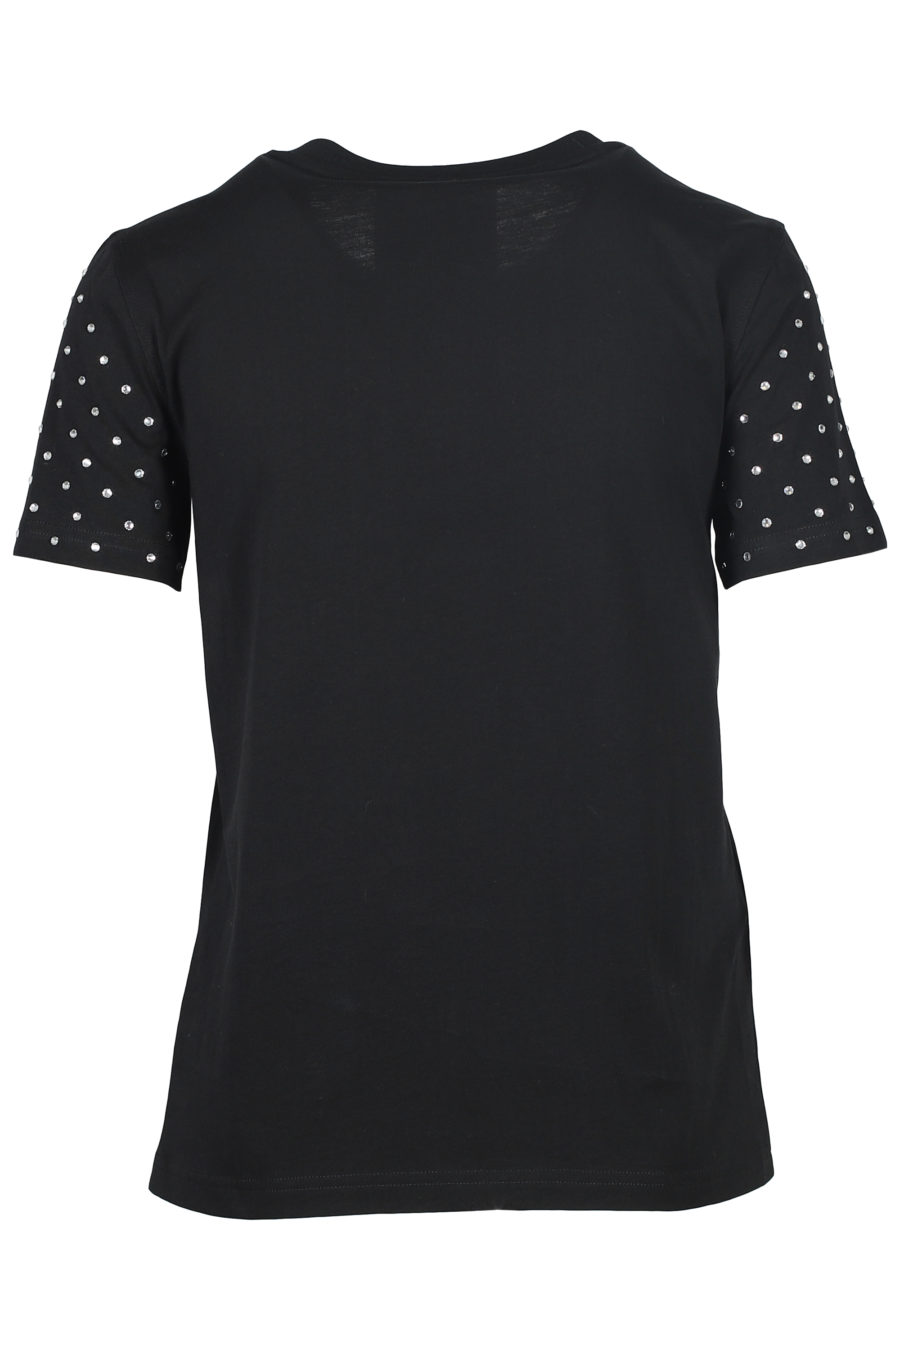 Black T-shirt with rhinestone teddy bear - IMG 5515